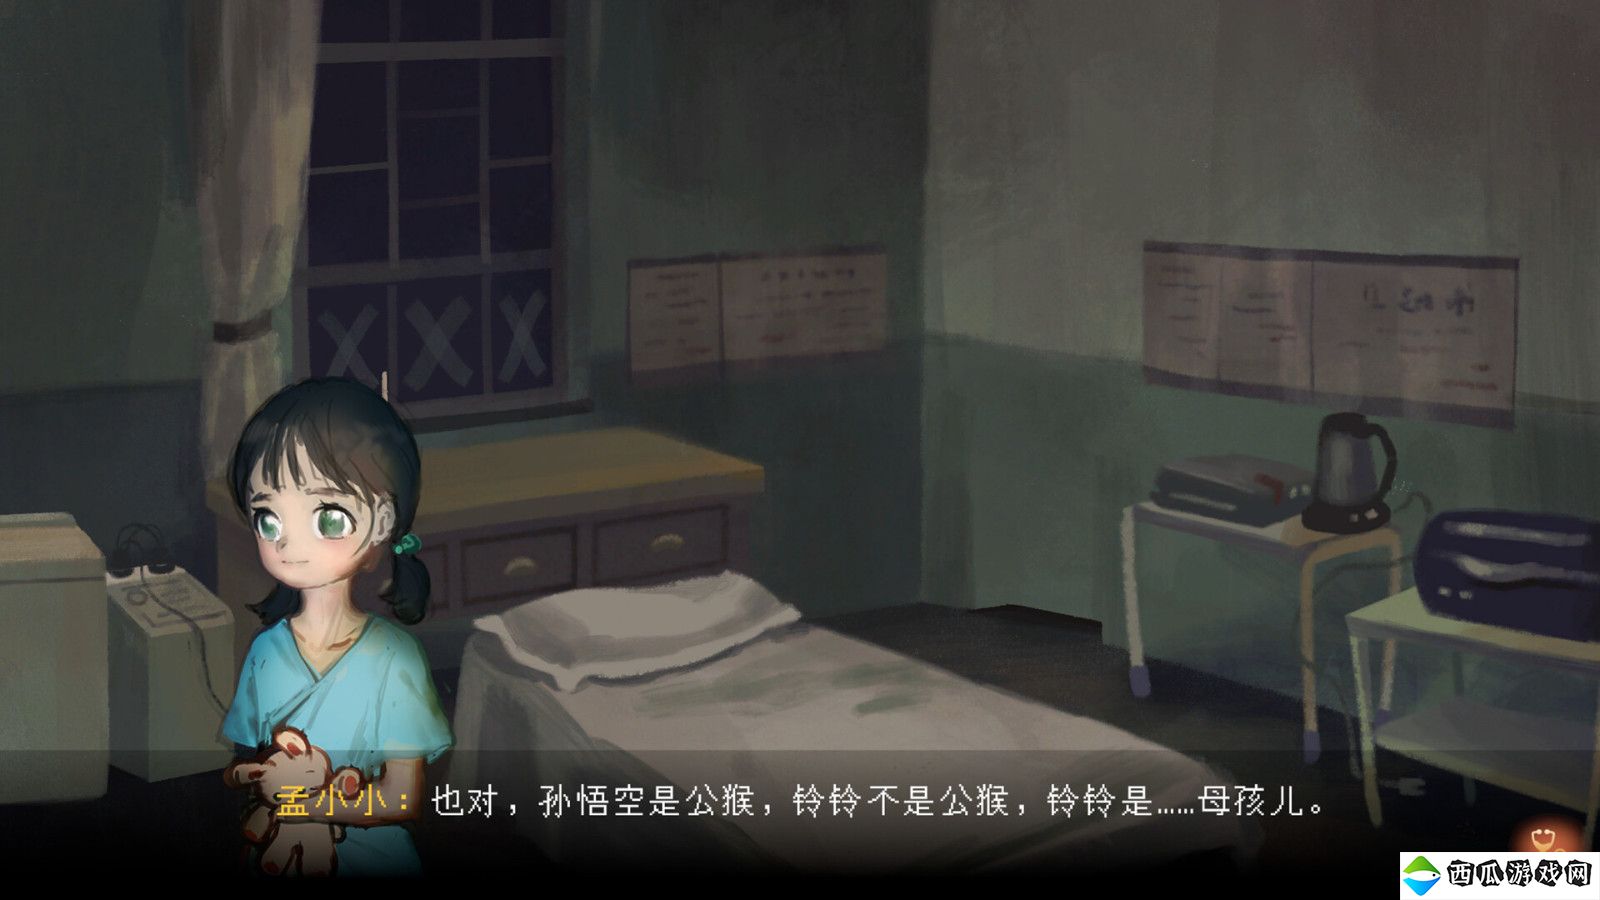 中式悬疑恐怖点击解谜AVG游戏《水鬼》Steam页面上线 支持简体中文